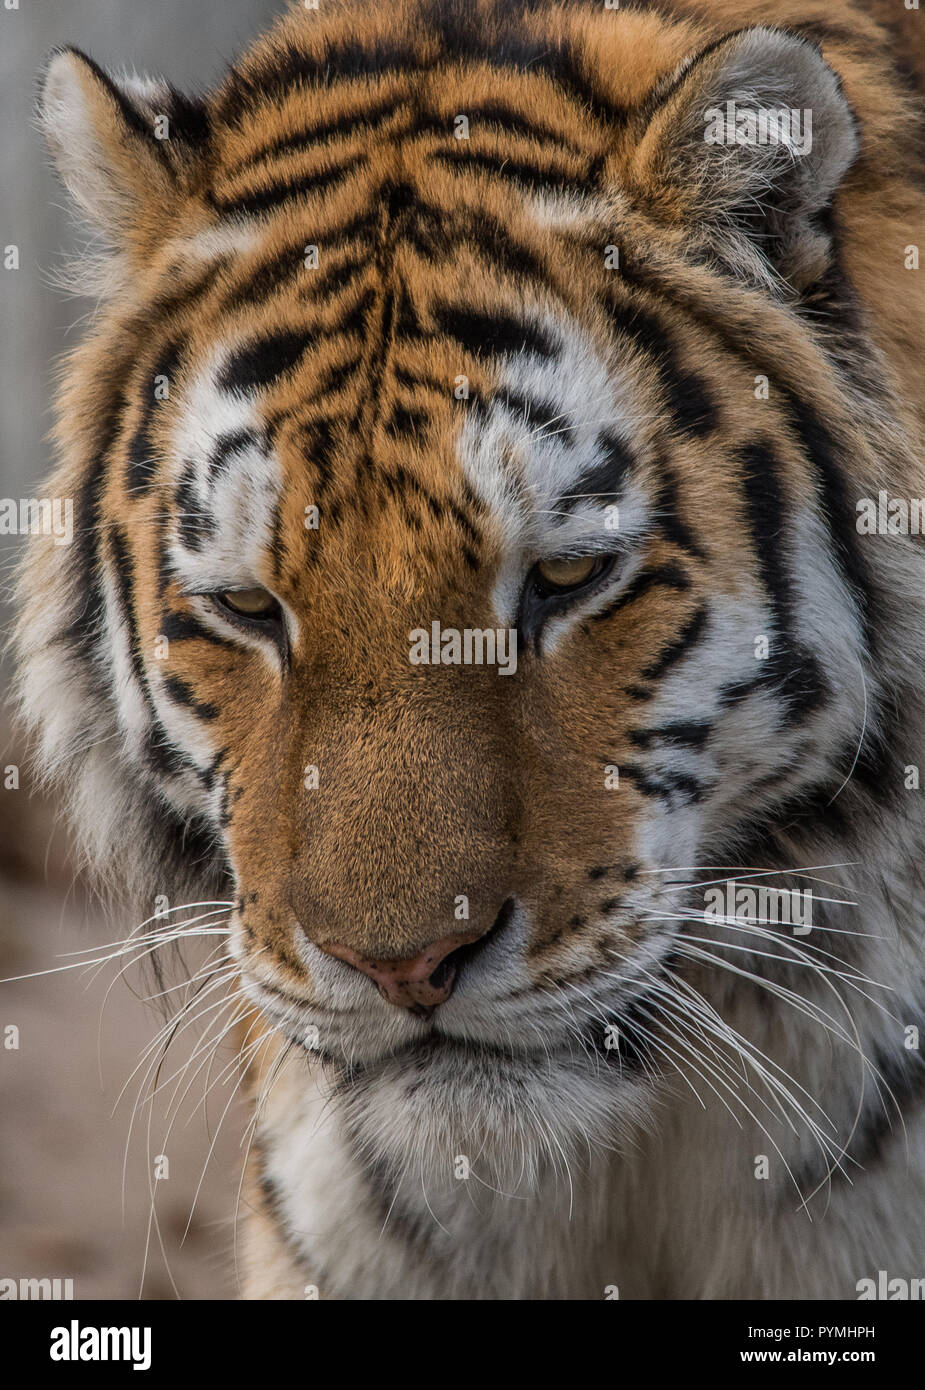 Tiger caminar y sentarse Foto de stock